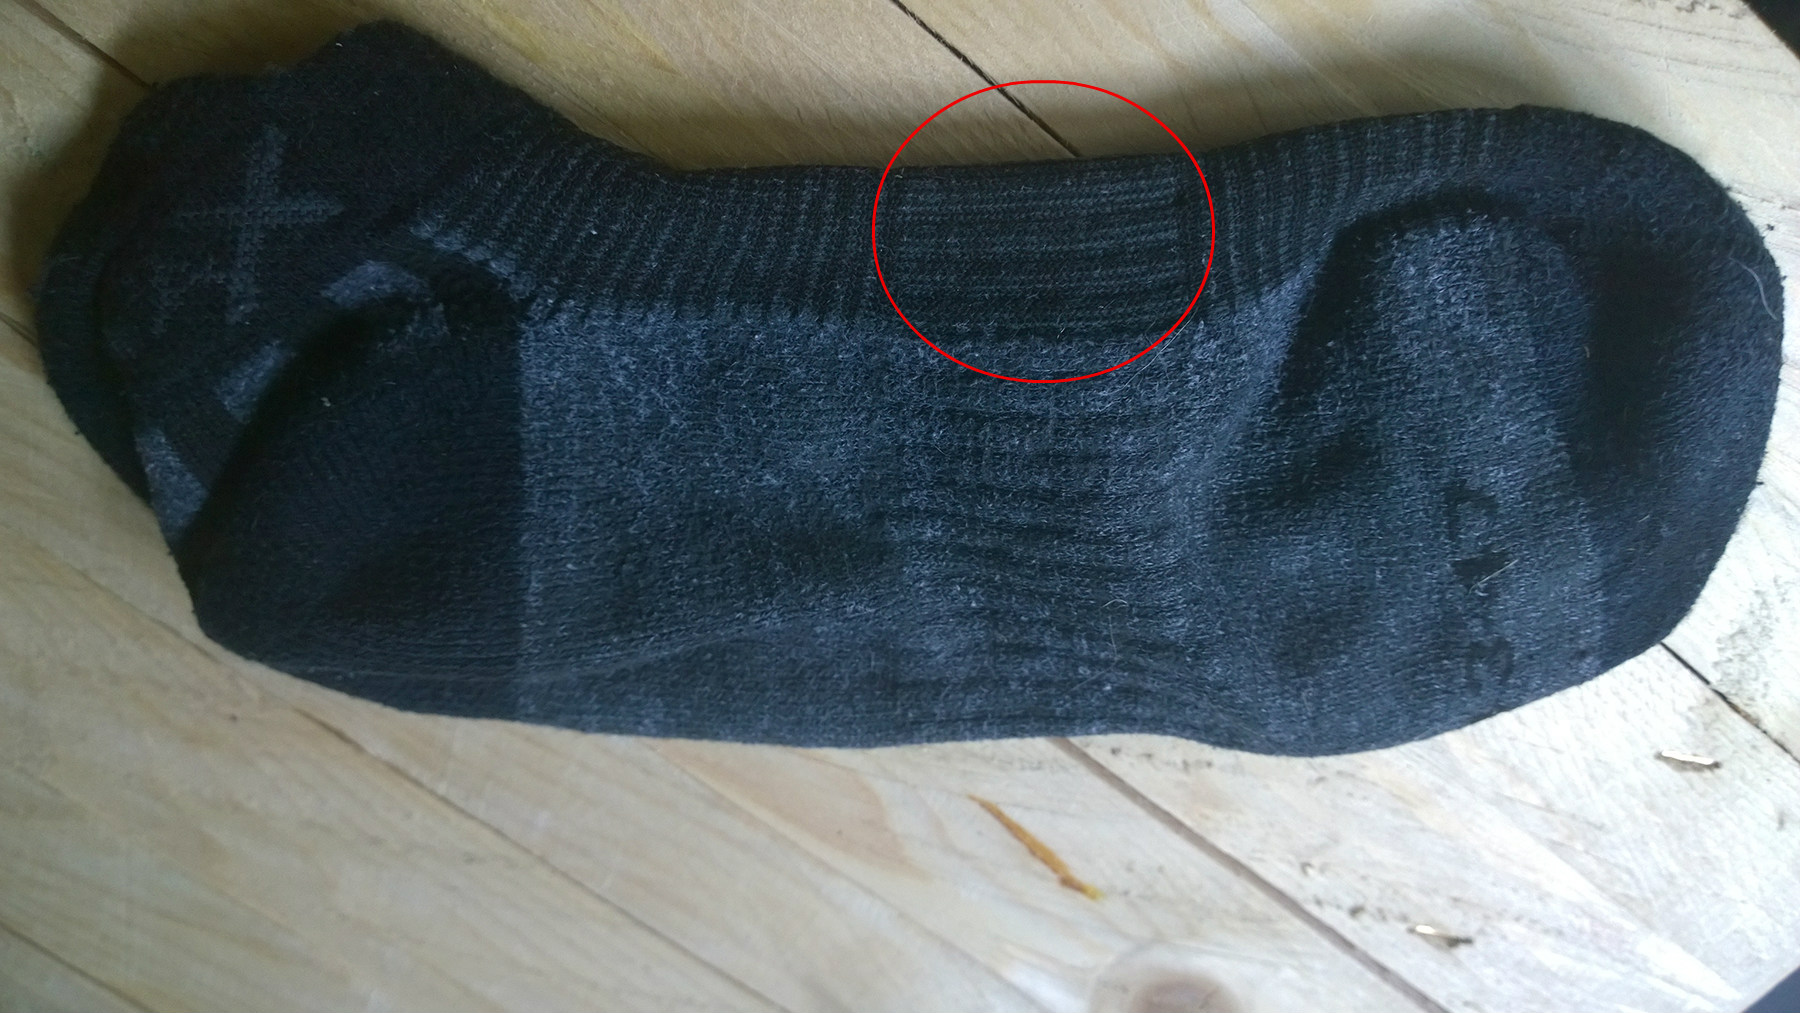 sherpa x ponožky so spevnenou nartovou časťou